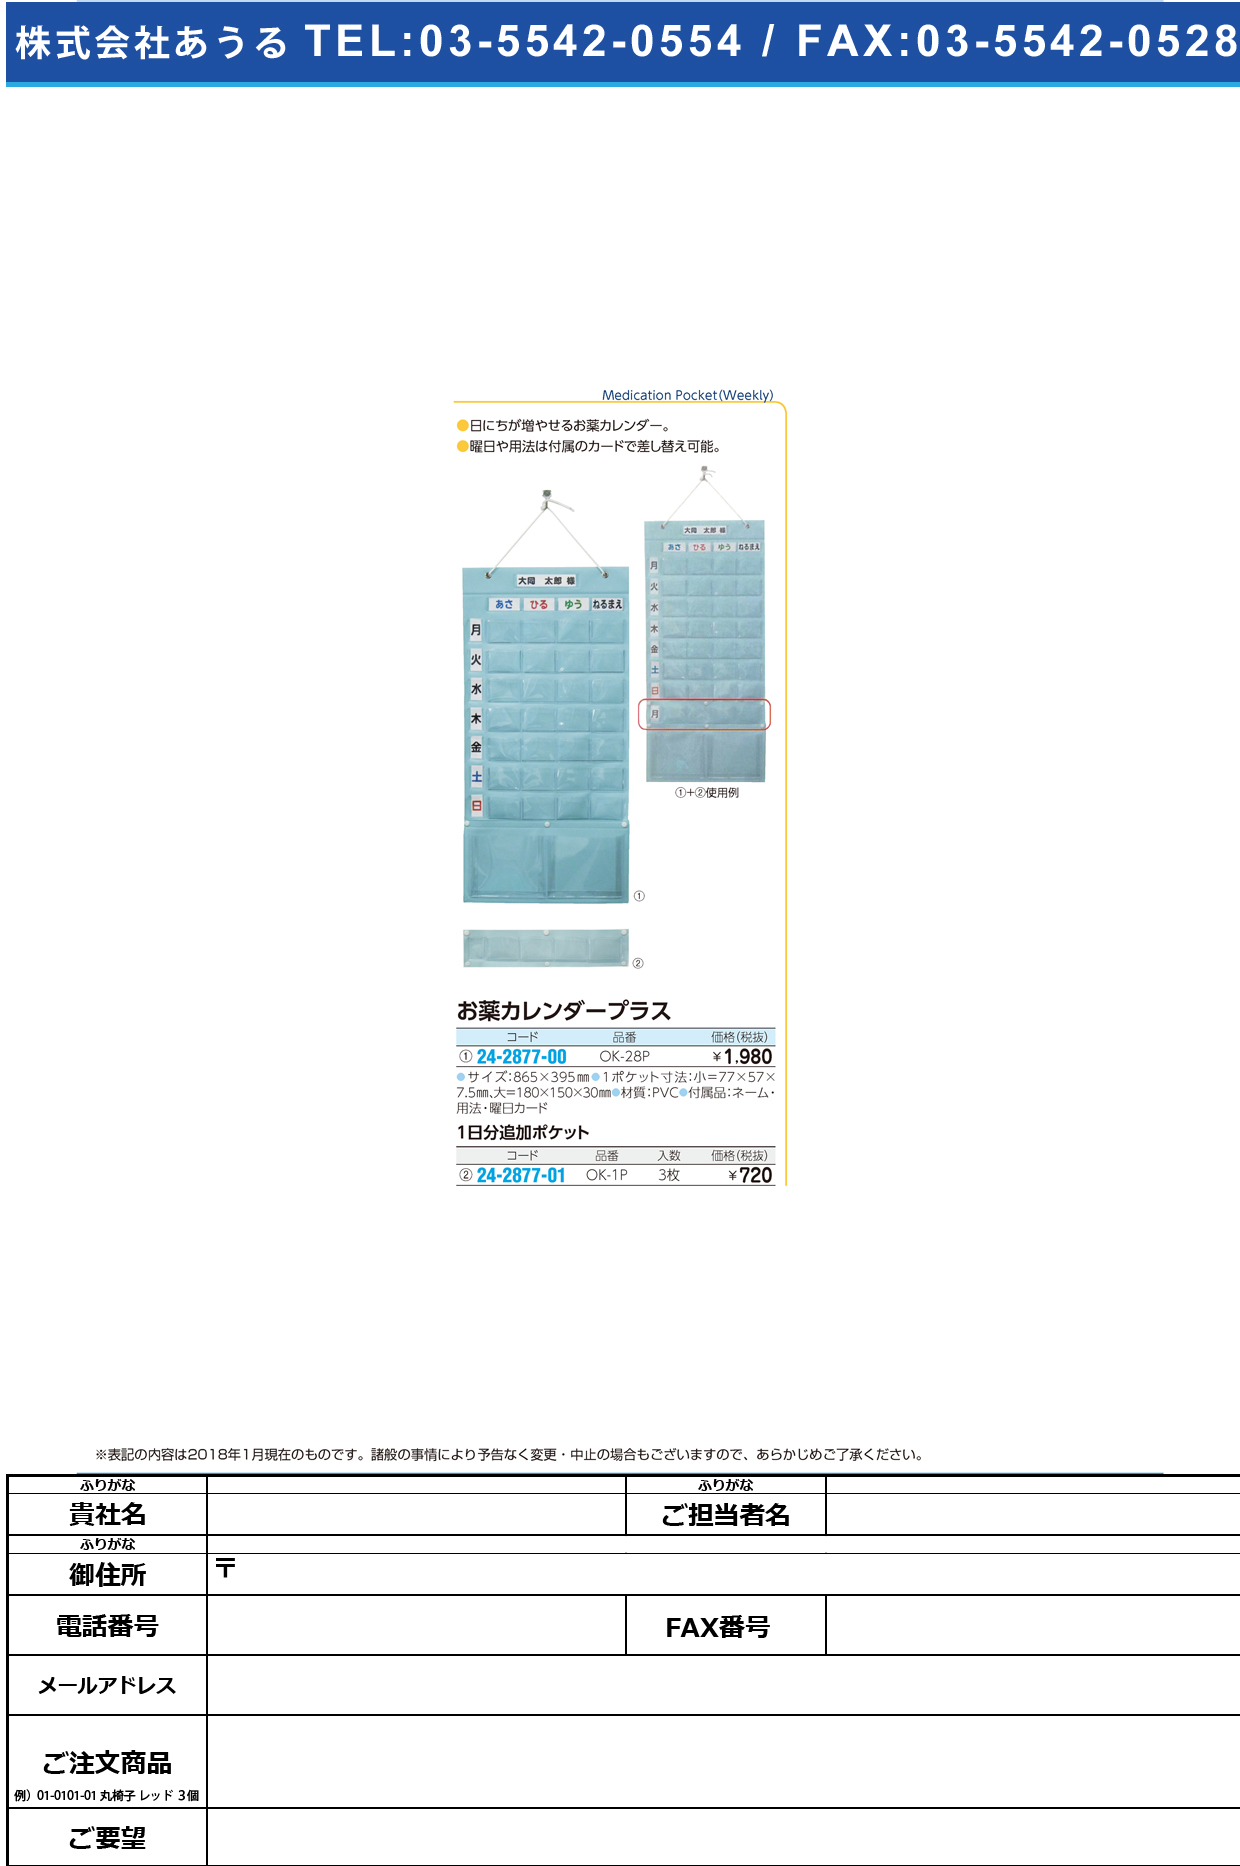 (24-2877-00)お薬カレンダープラス OK-28P ｵｸｽﾘｶﾚﾝﾀﾞｰﾌﾟﾗｽ(大同化工)【1個単位】【2018年カタログ商品】